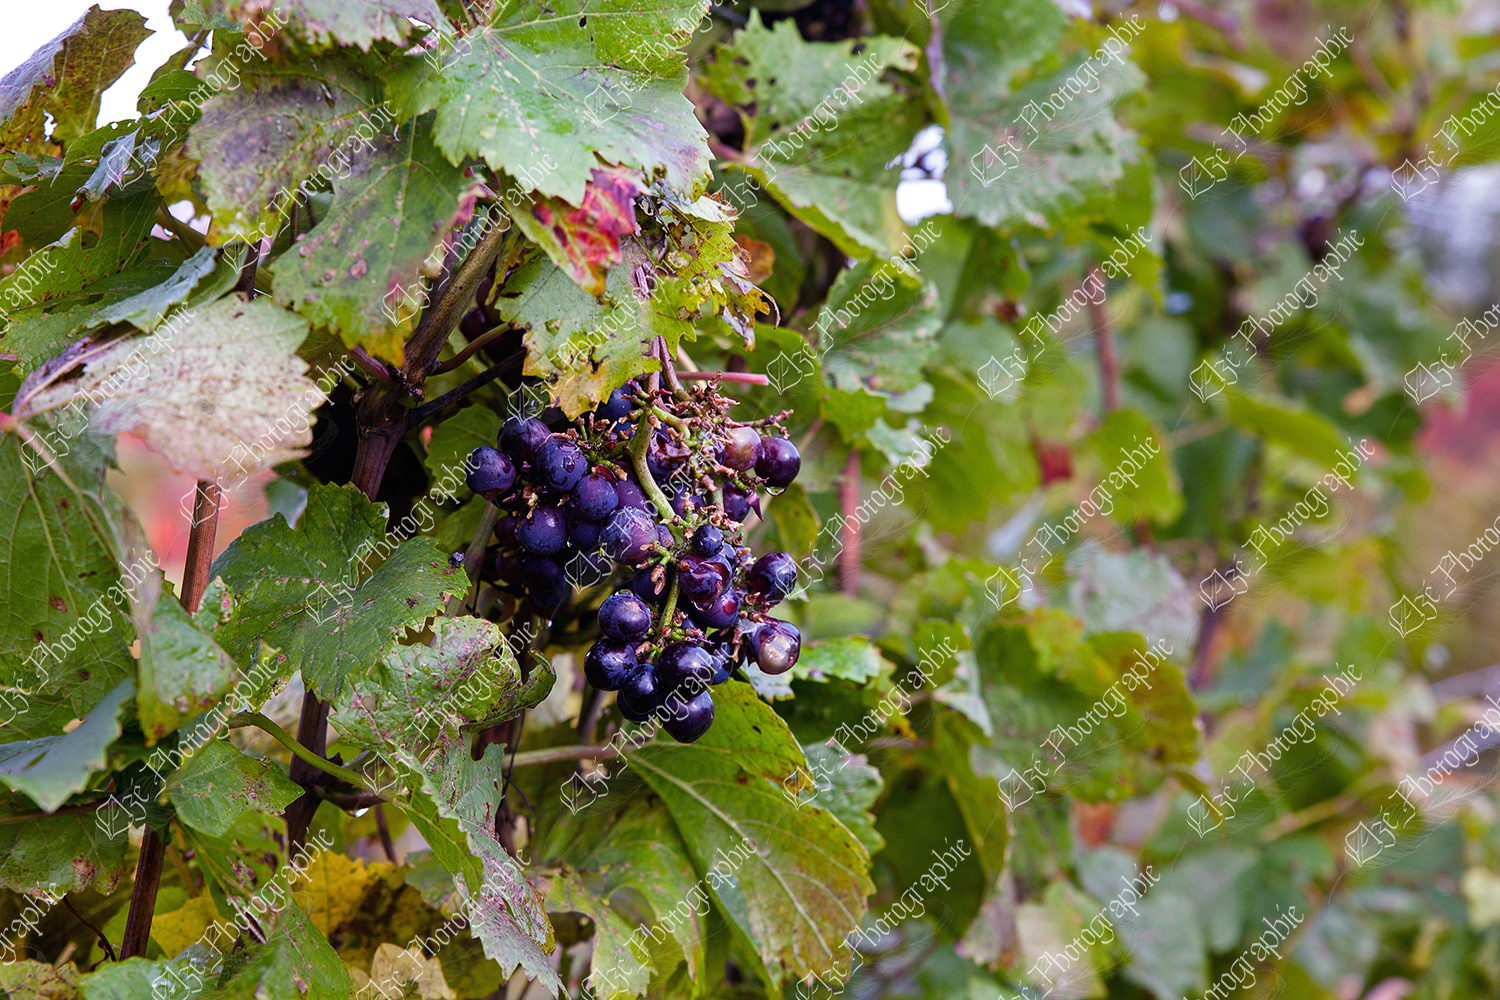 elze_photo_3303_vignoble_raisins_mauves_feuilles_bunch_of_grapes_wine